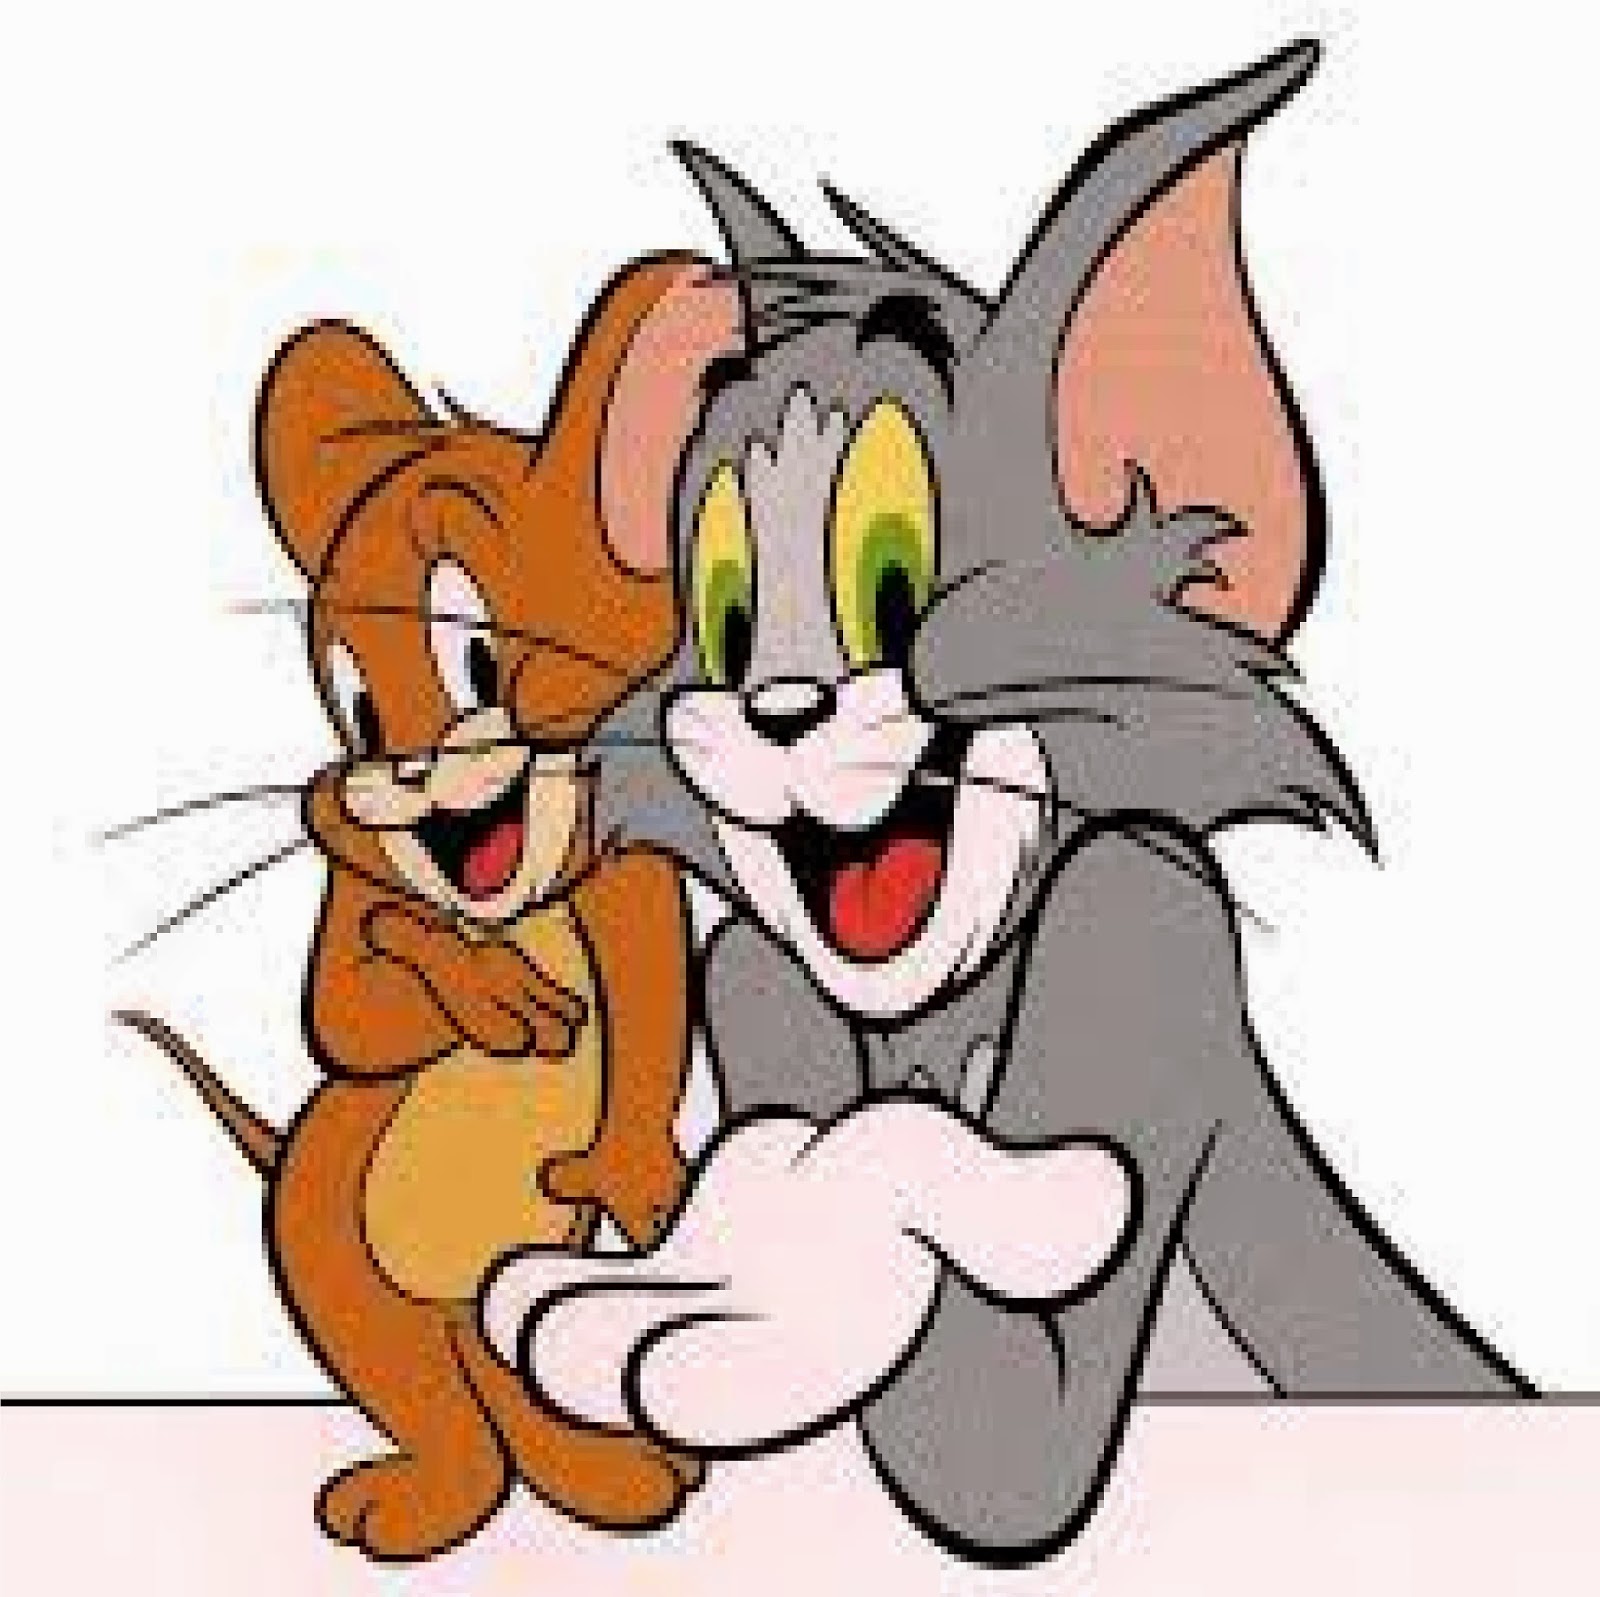 Kumpulan Gambar Tom And Jerry Gambar Lucu Terbaru Cartoon Animation 